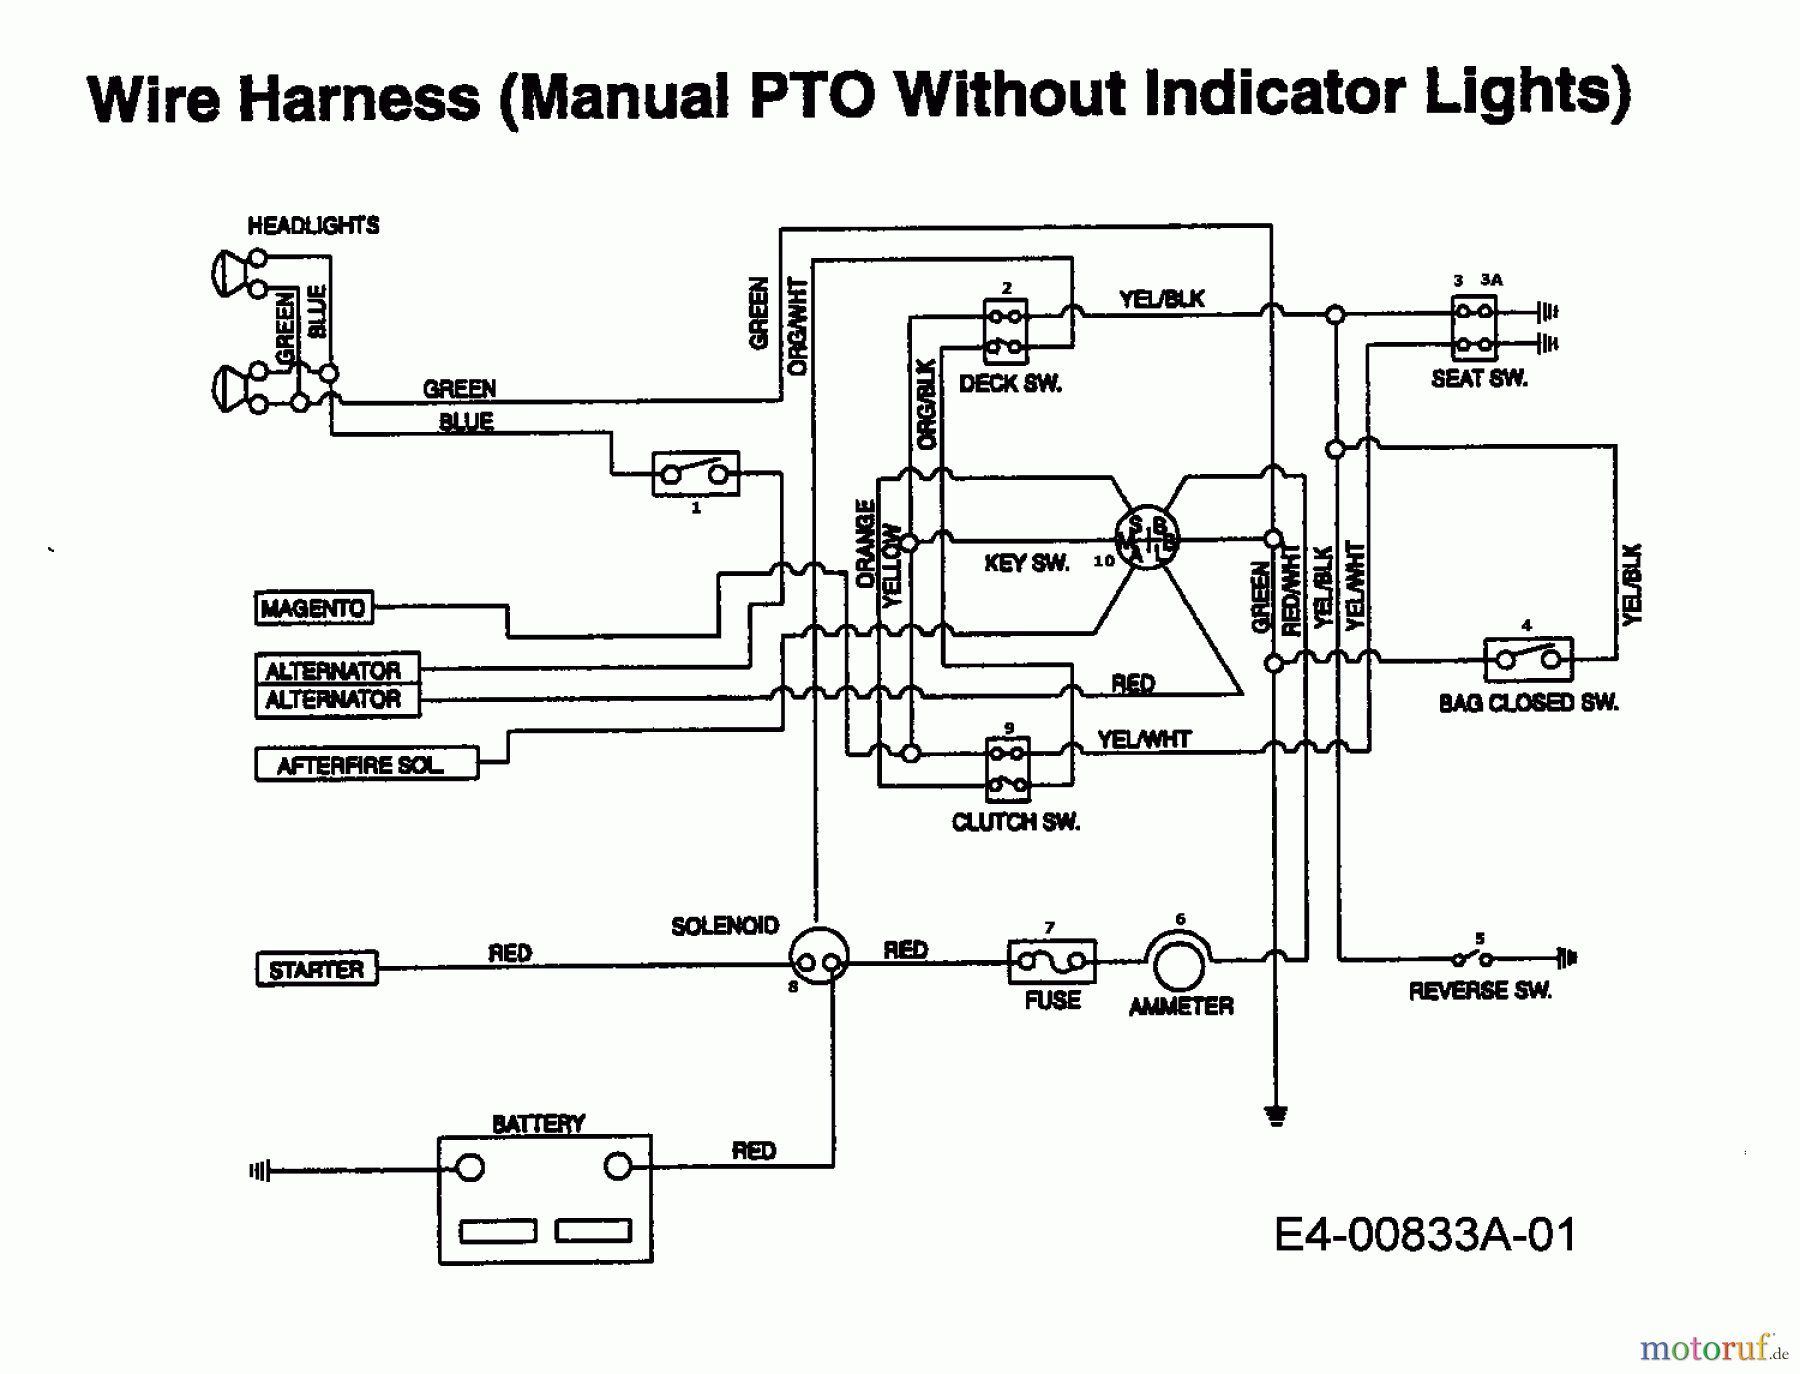  Edt Tracteurs de pelouse EDT 145 H-102 13CP793N610  (1999) Plan électrique sans lampe de contrôle